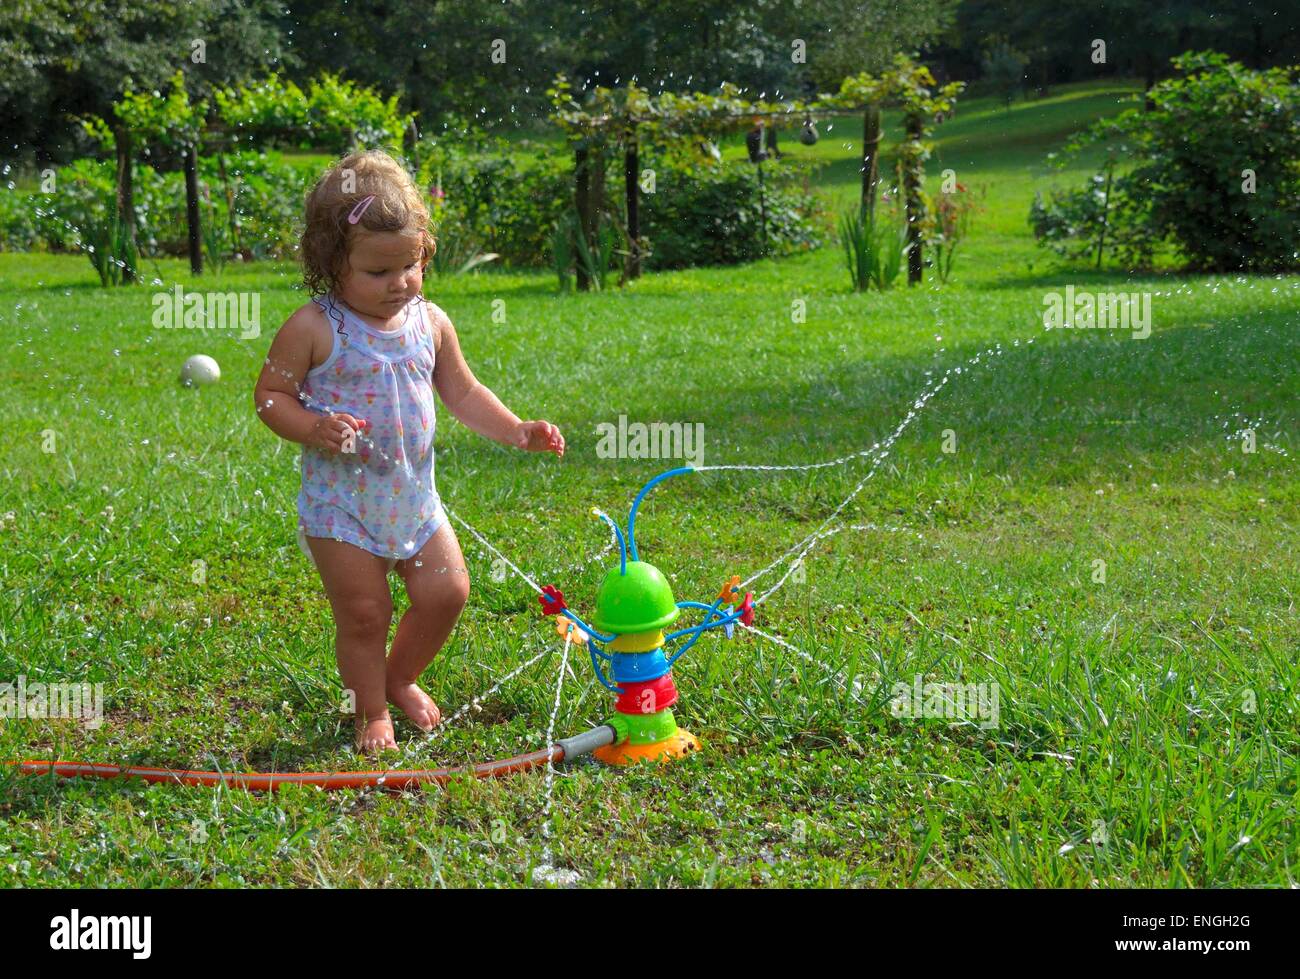 Blonden lockigen Haaren nass Kleinkind spielen mit einem Spielzeug-Sprinkler.  Wassertröpfchen sprühen rund um. Stockfoto